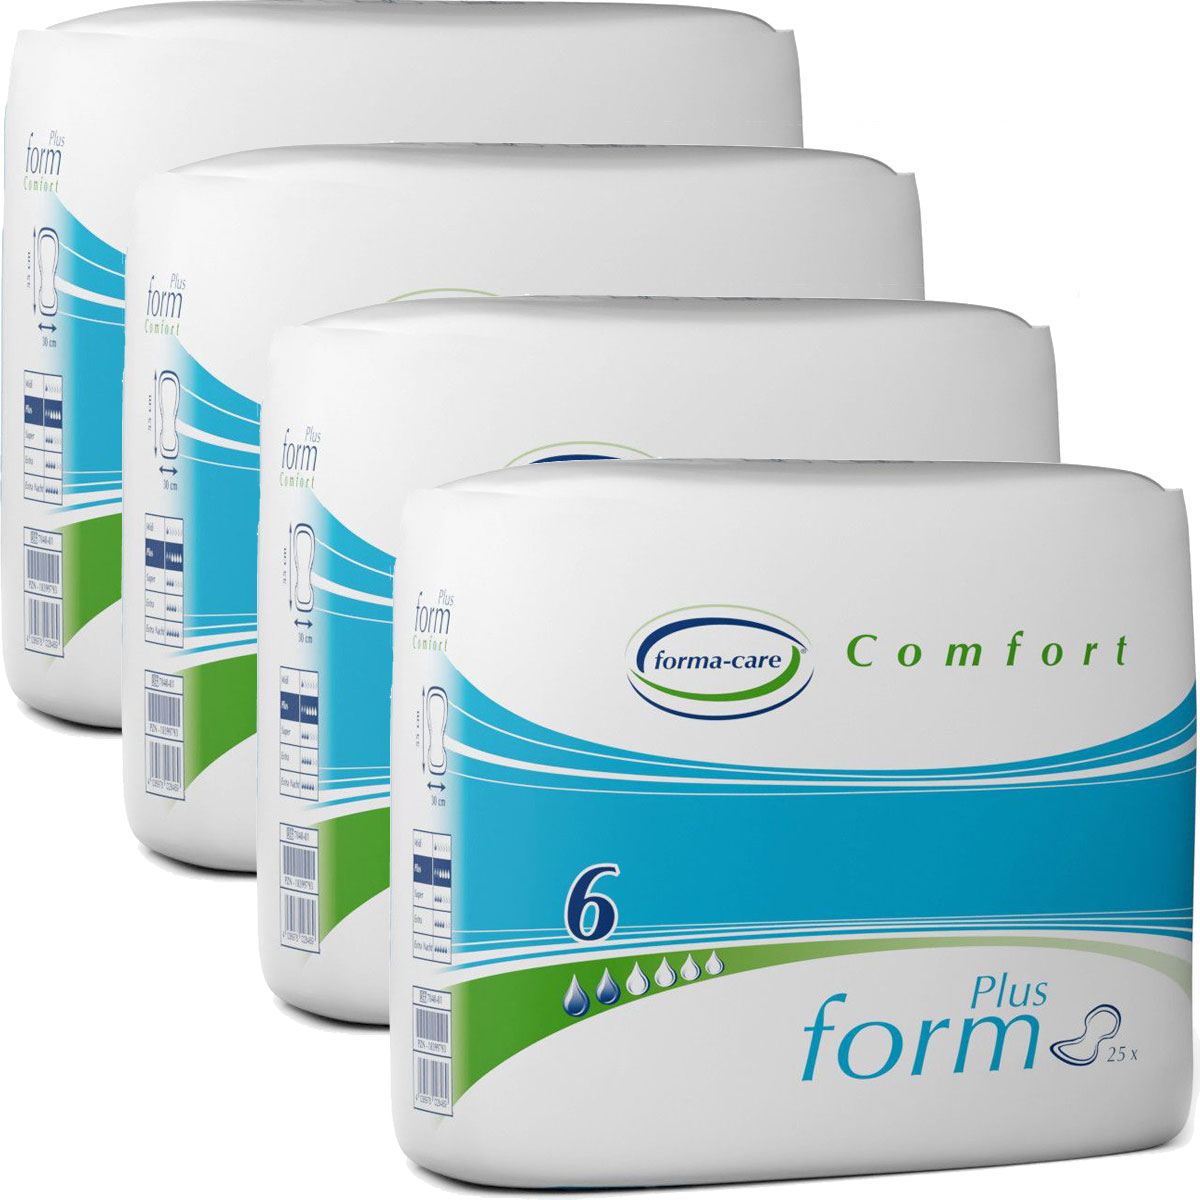 Forma-Care Form Comfort PLUS - anantomische Vorlagen - 4x 25 (100) St. Karton